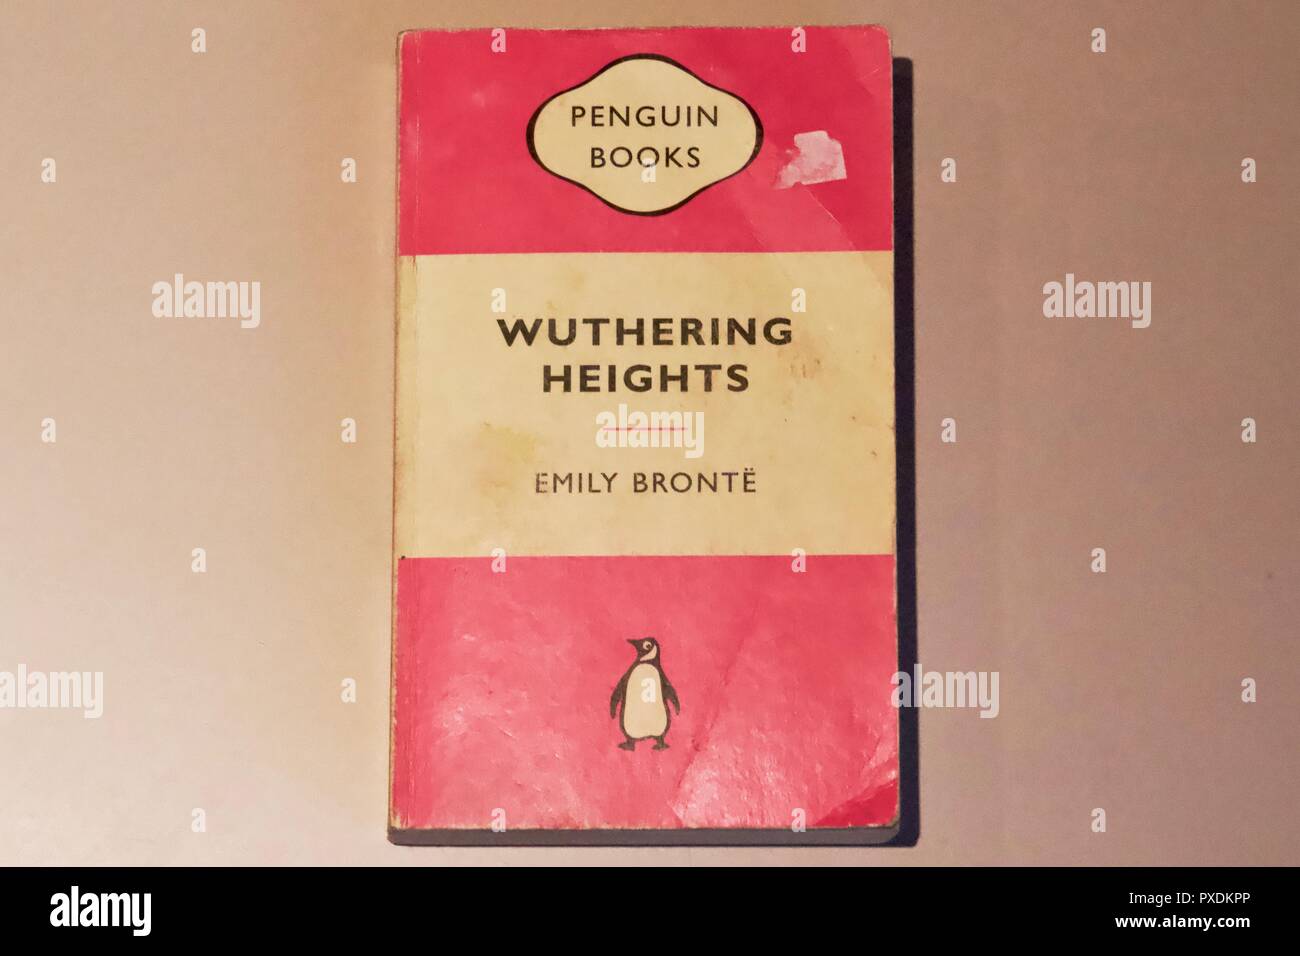 Rosa libro in brossura copertina per Wuthering Heights di Emily Bronte, pubblicato da Penguin books Foto Stock